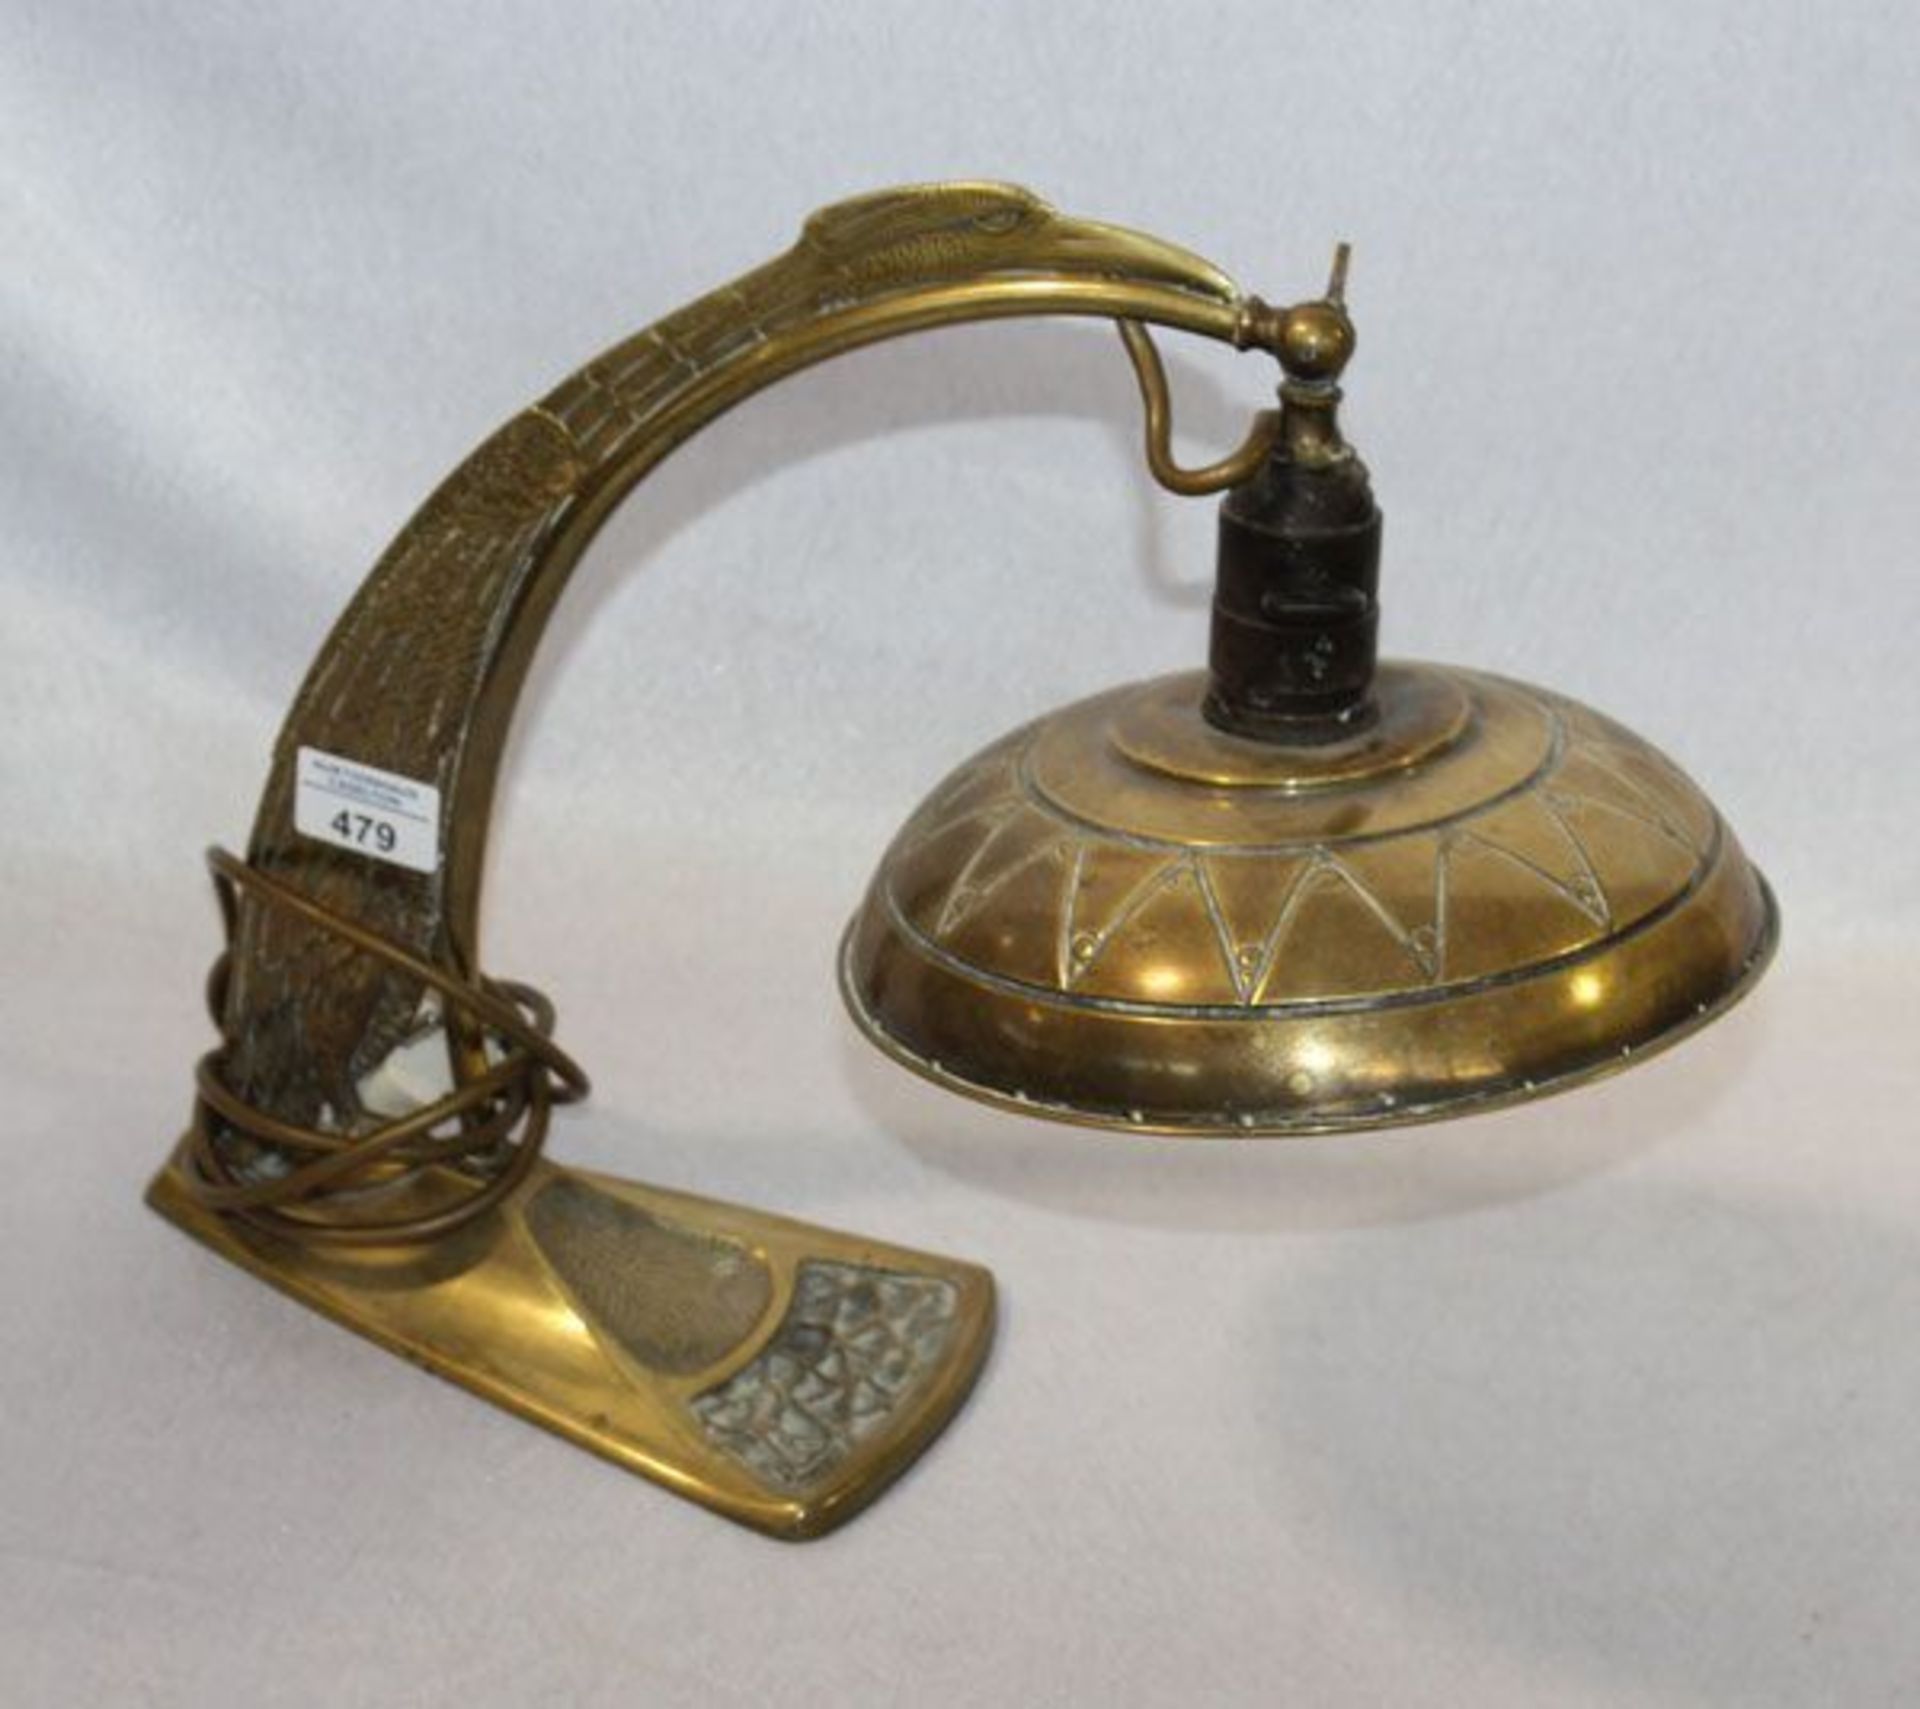 Messing Tischlampe mit reliefierter Vogeldarstellung, H 33 cm, Gebrauchsspuren    Mindestpreis: